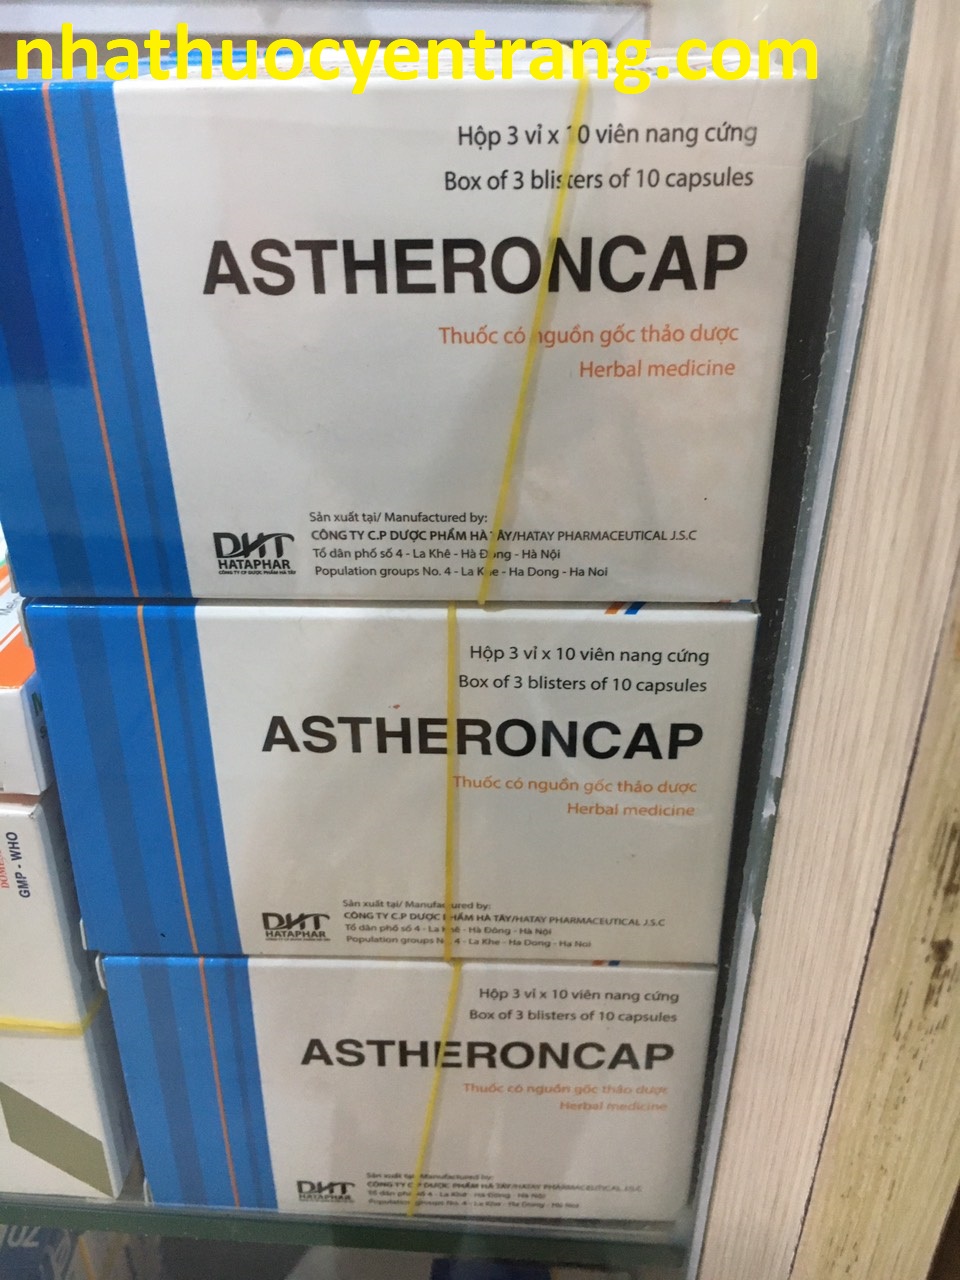 Astheroncap